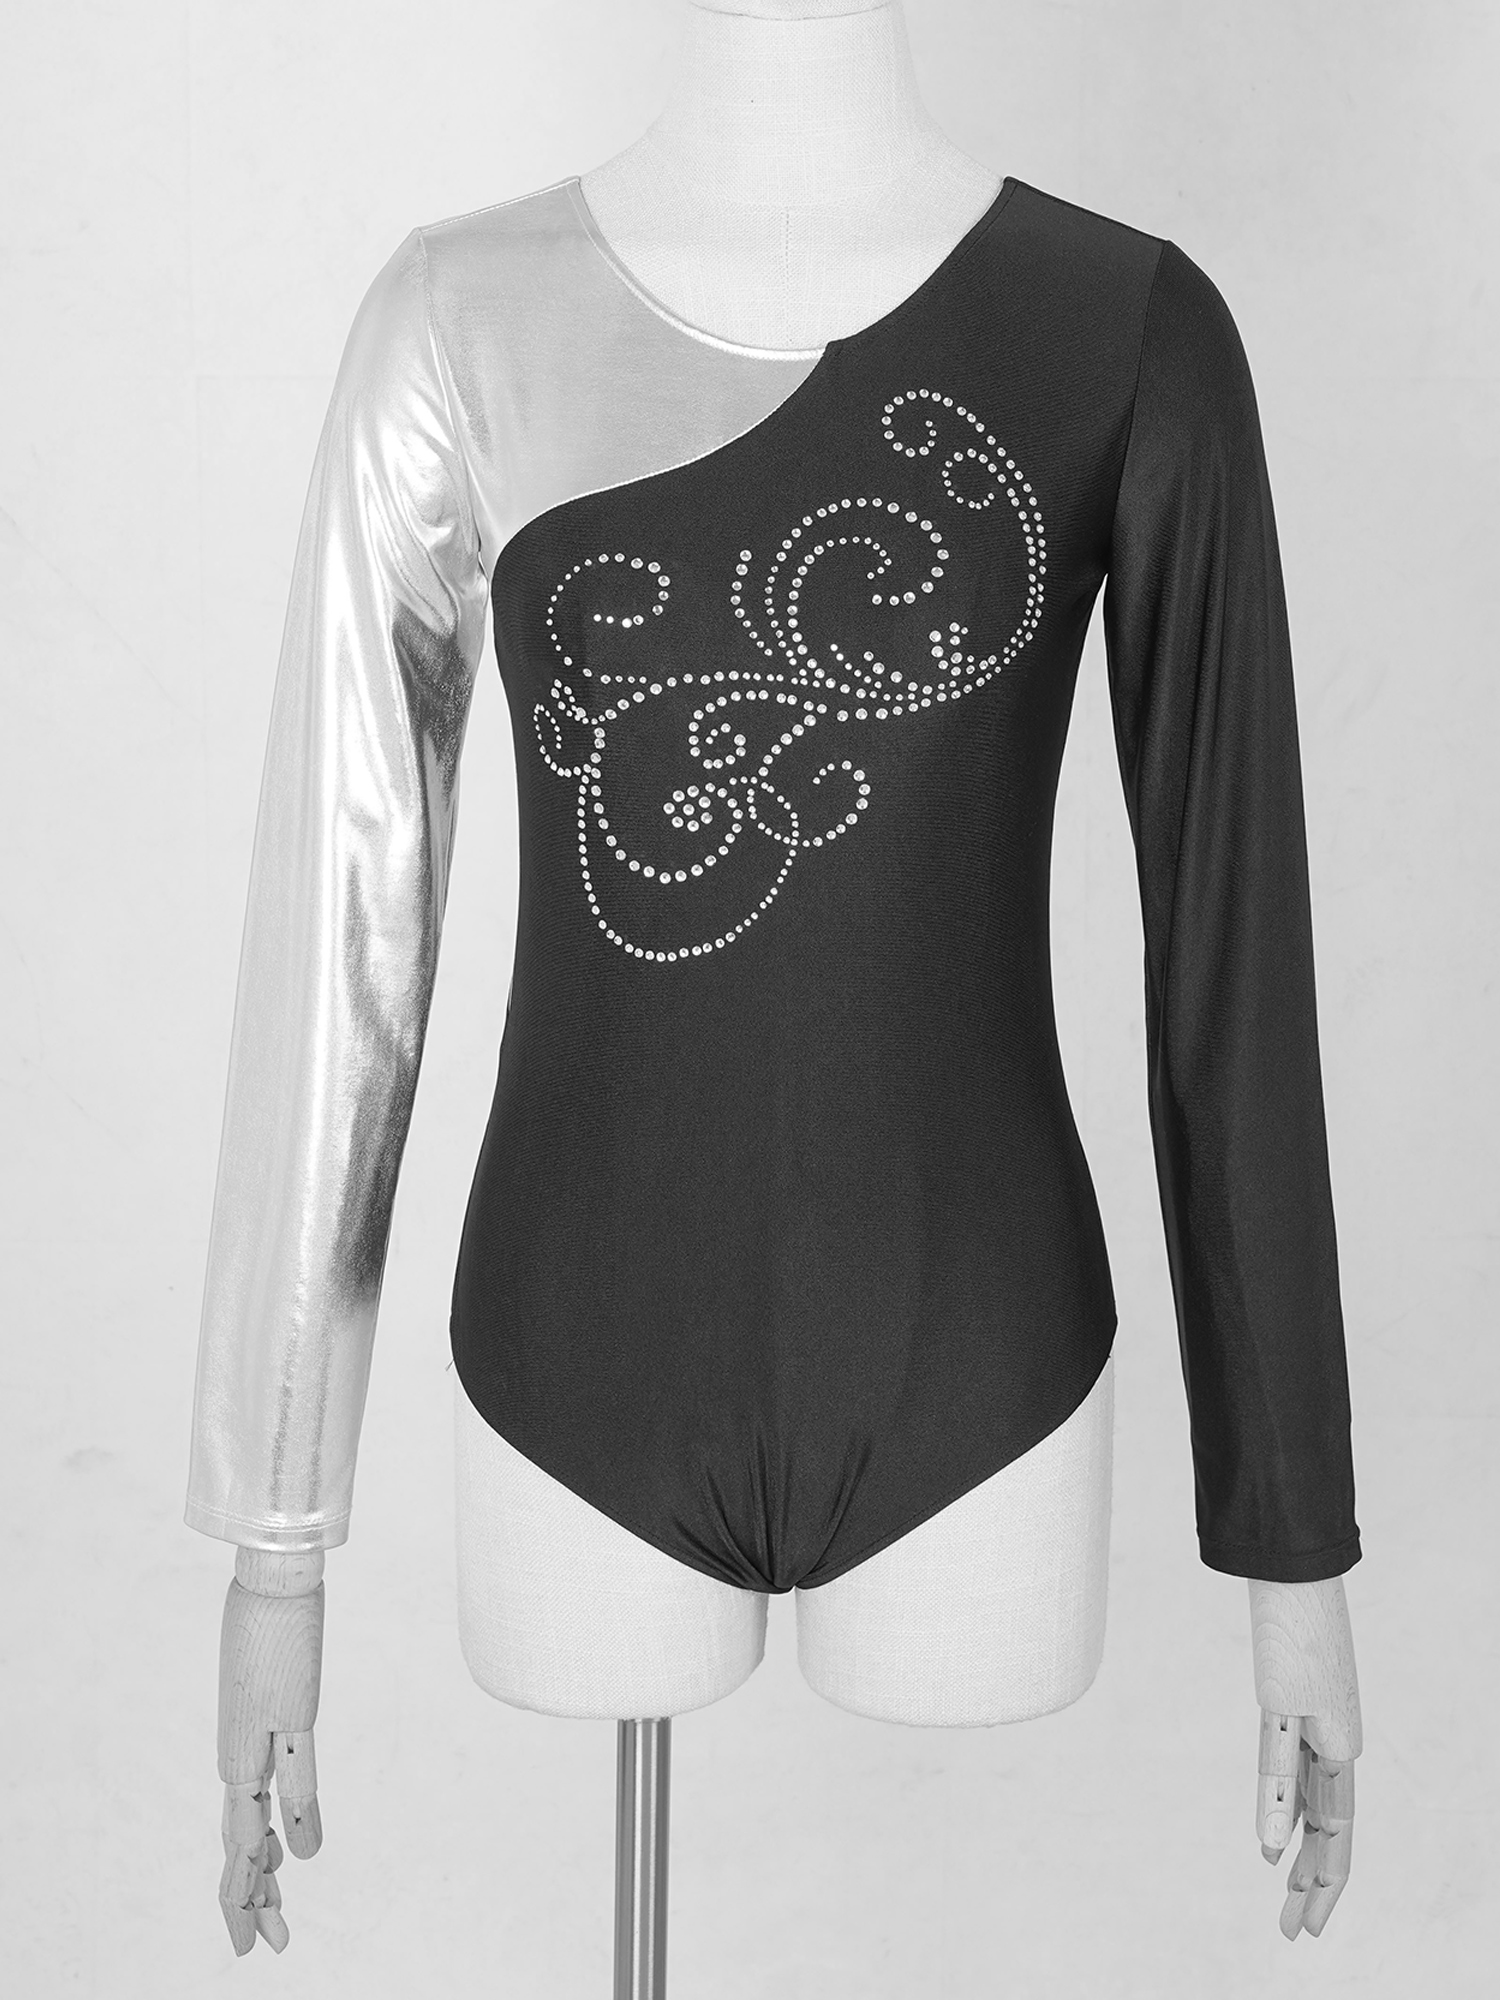 Figuur schaatsen jumpsuit dames metallic glanzende strass met lange mouwen bodysuit ballet dance -turnpakje voor vrouw gymnastiek huitenaarden